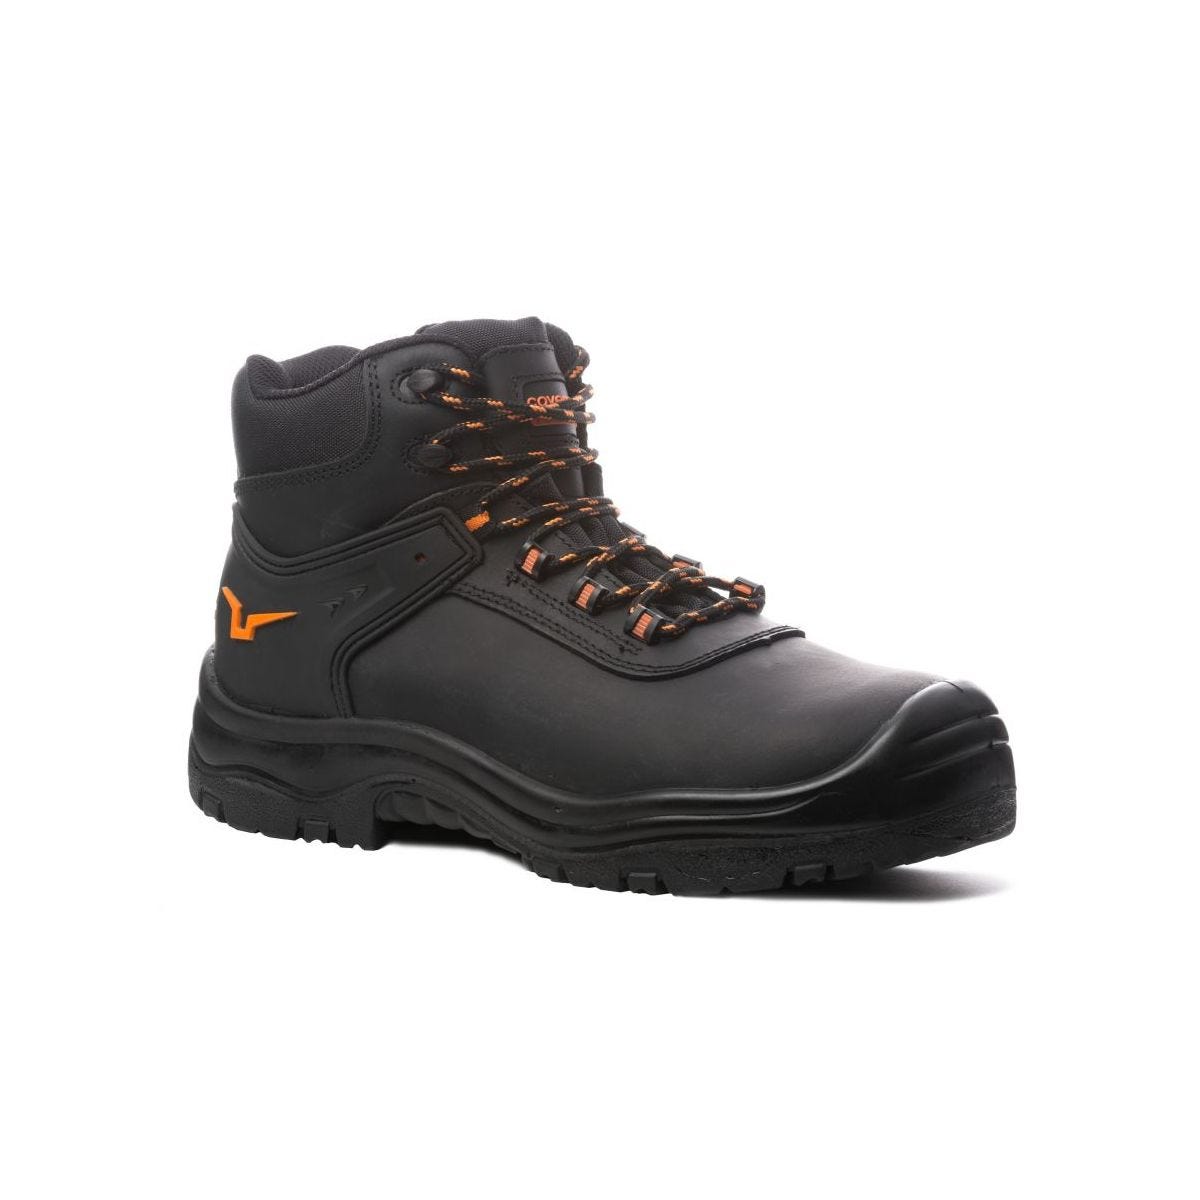 Chaussures de sécurité hautes S3 SRC OPAL composite Noir - Coverguard - Taille 44 0